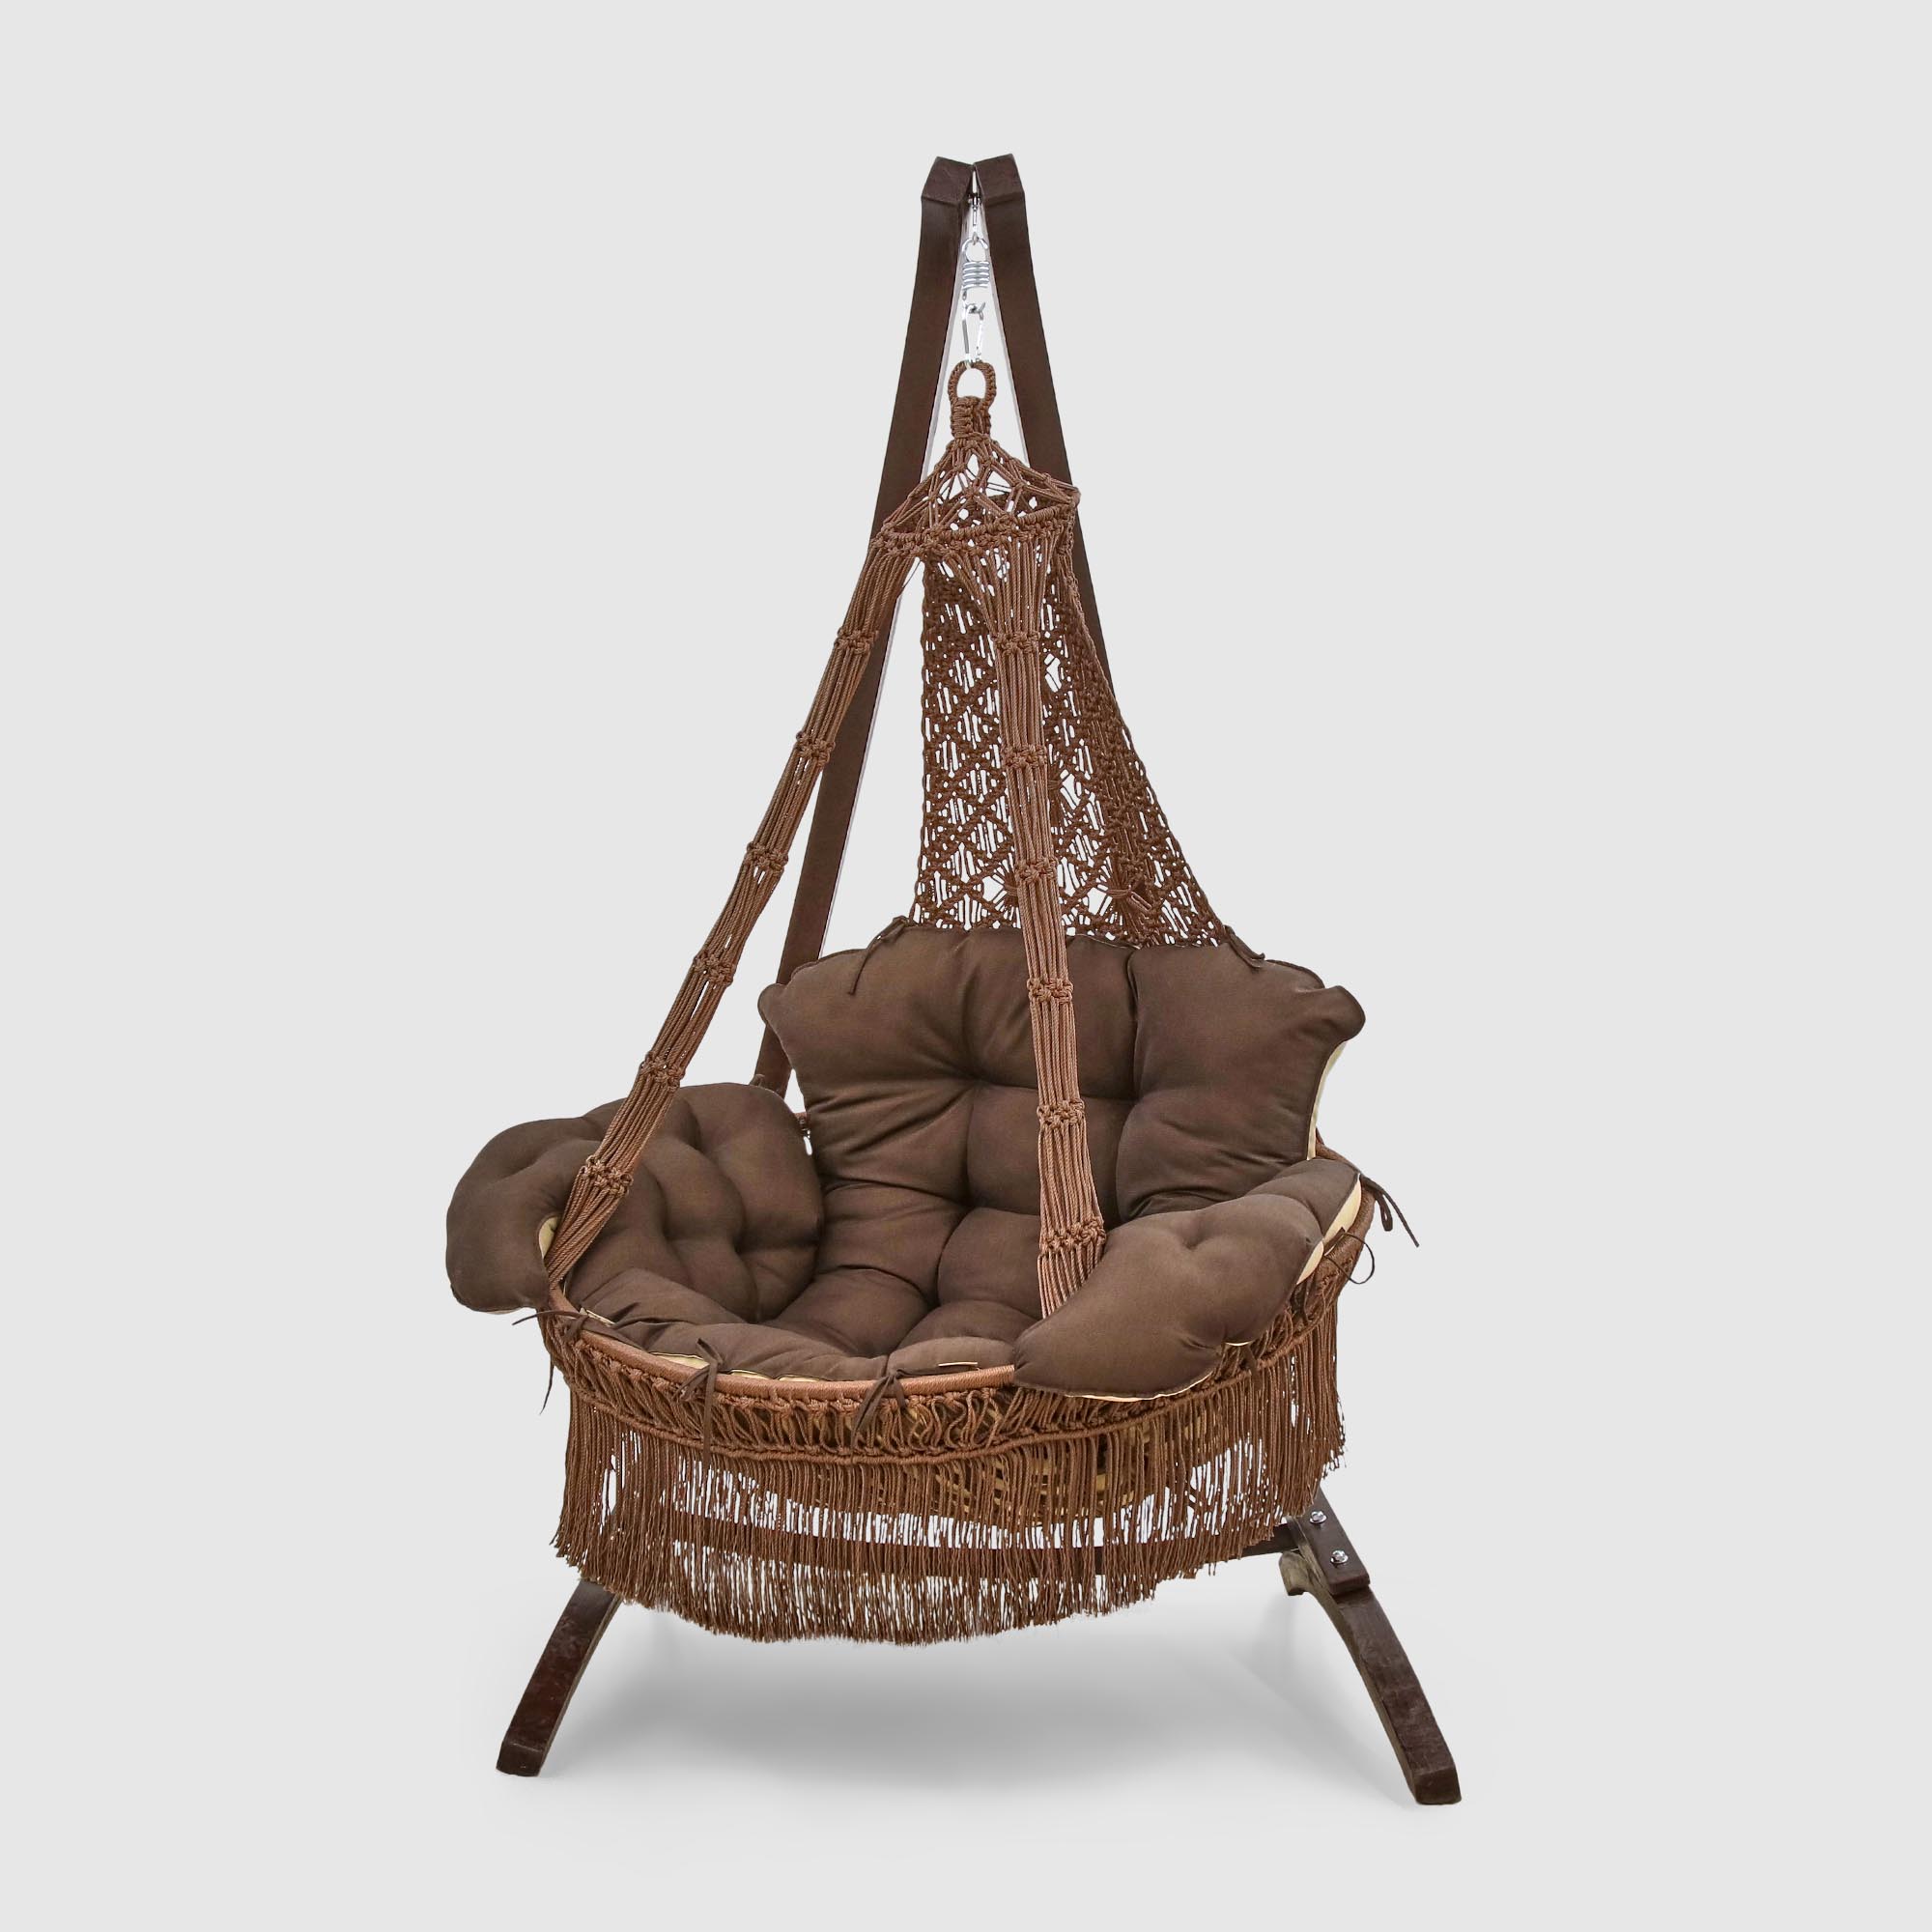 Кресло подвесное Besta Fiesta Картагена коричневый (без каркаса) кресло качалка besta fiesta сеара подвесное коричневое